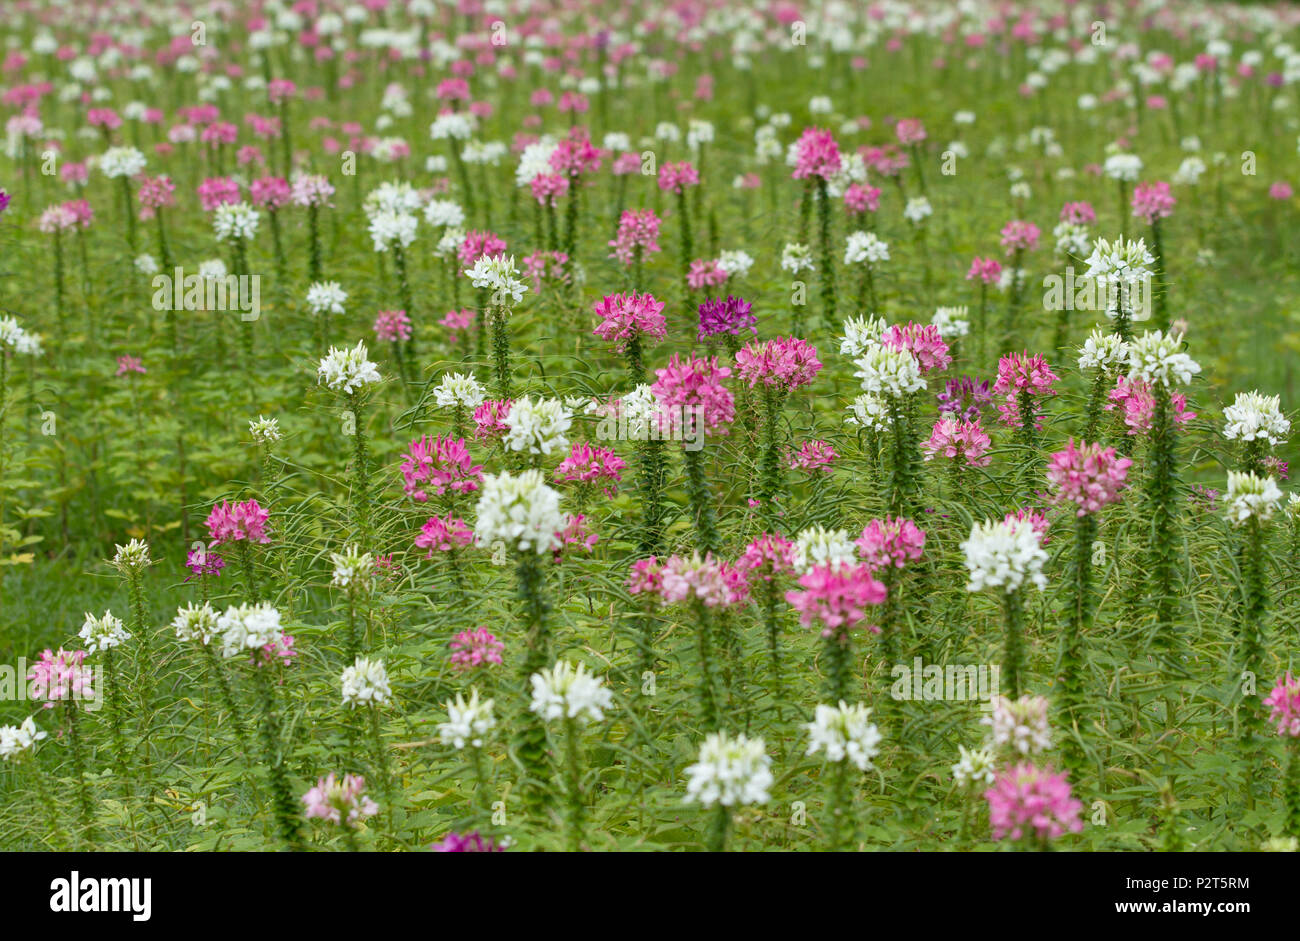 Spider flower field Stock Photo